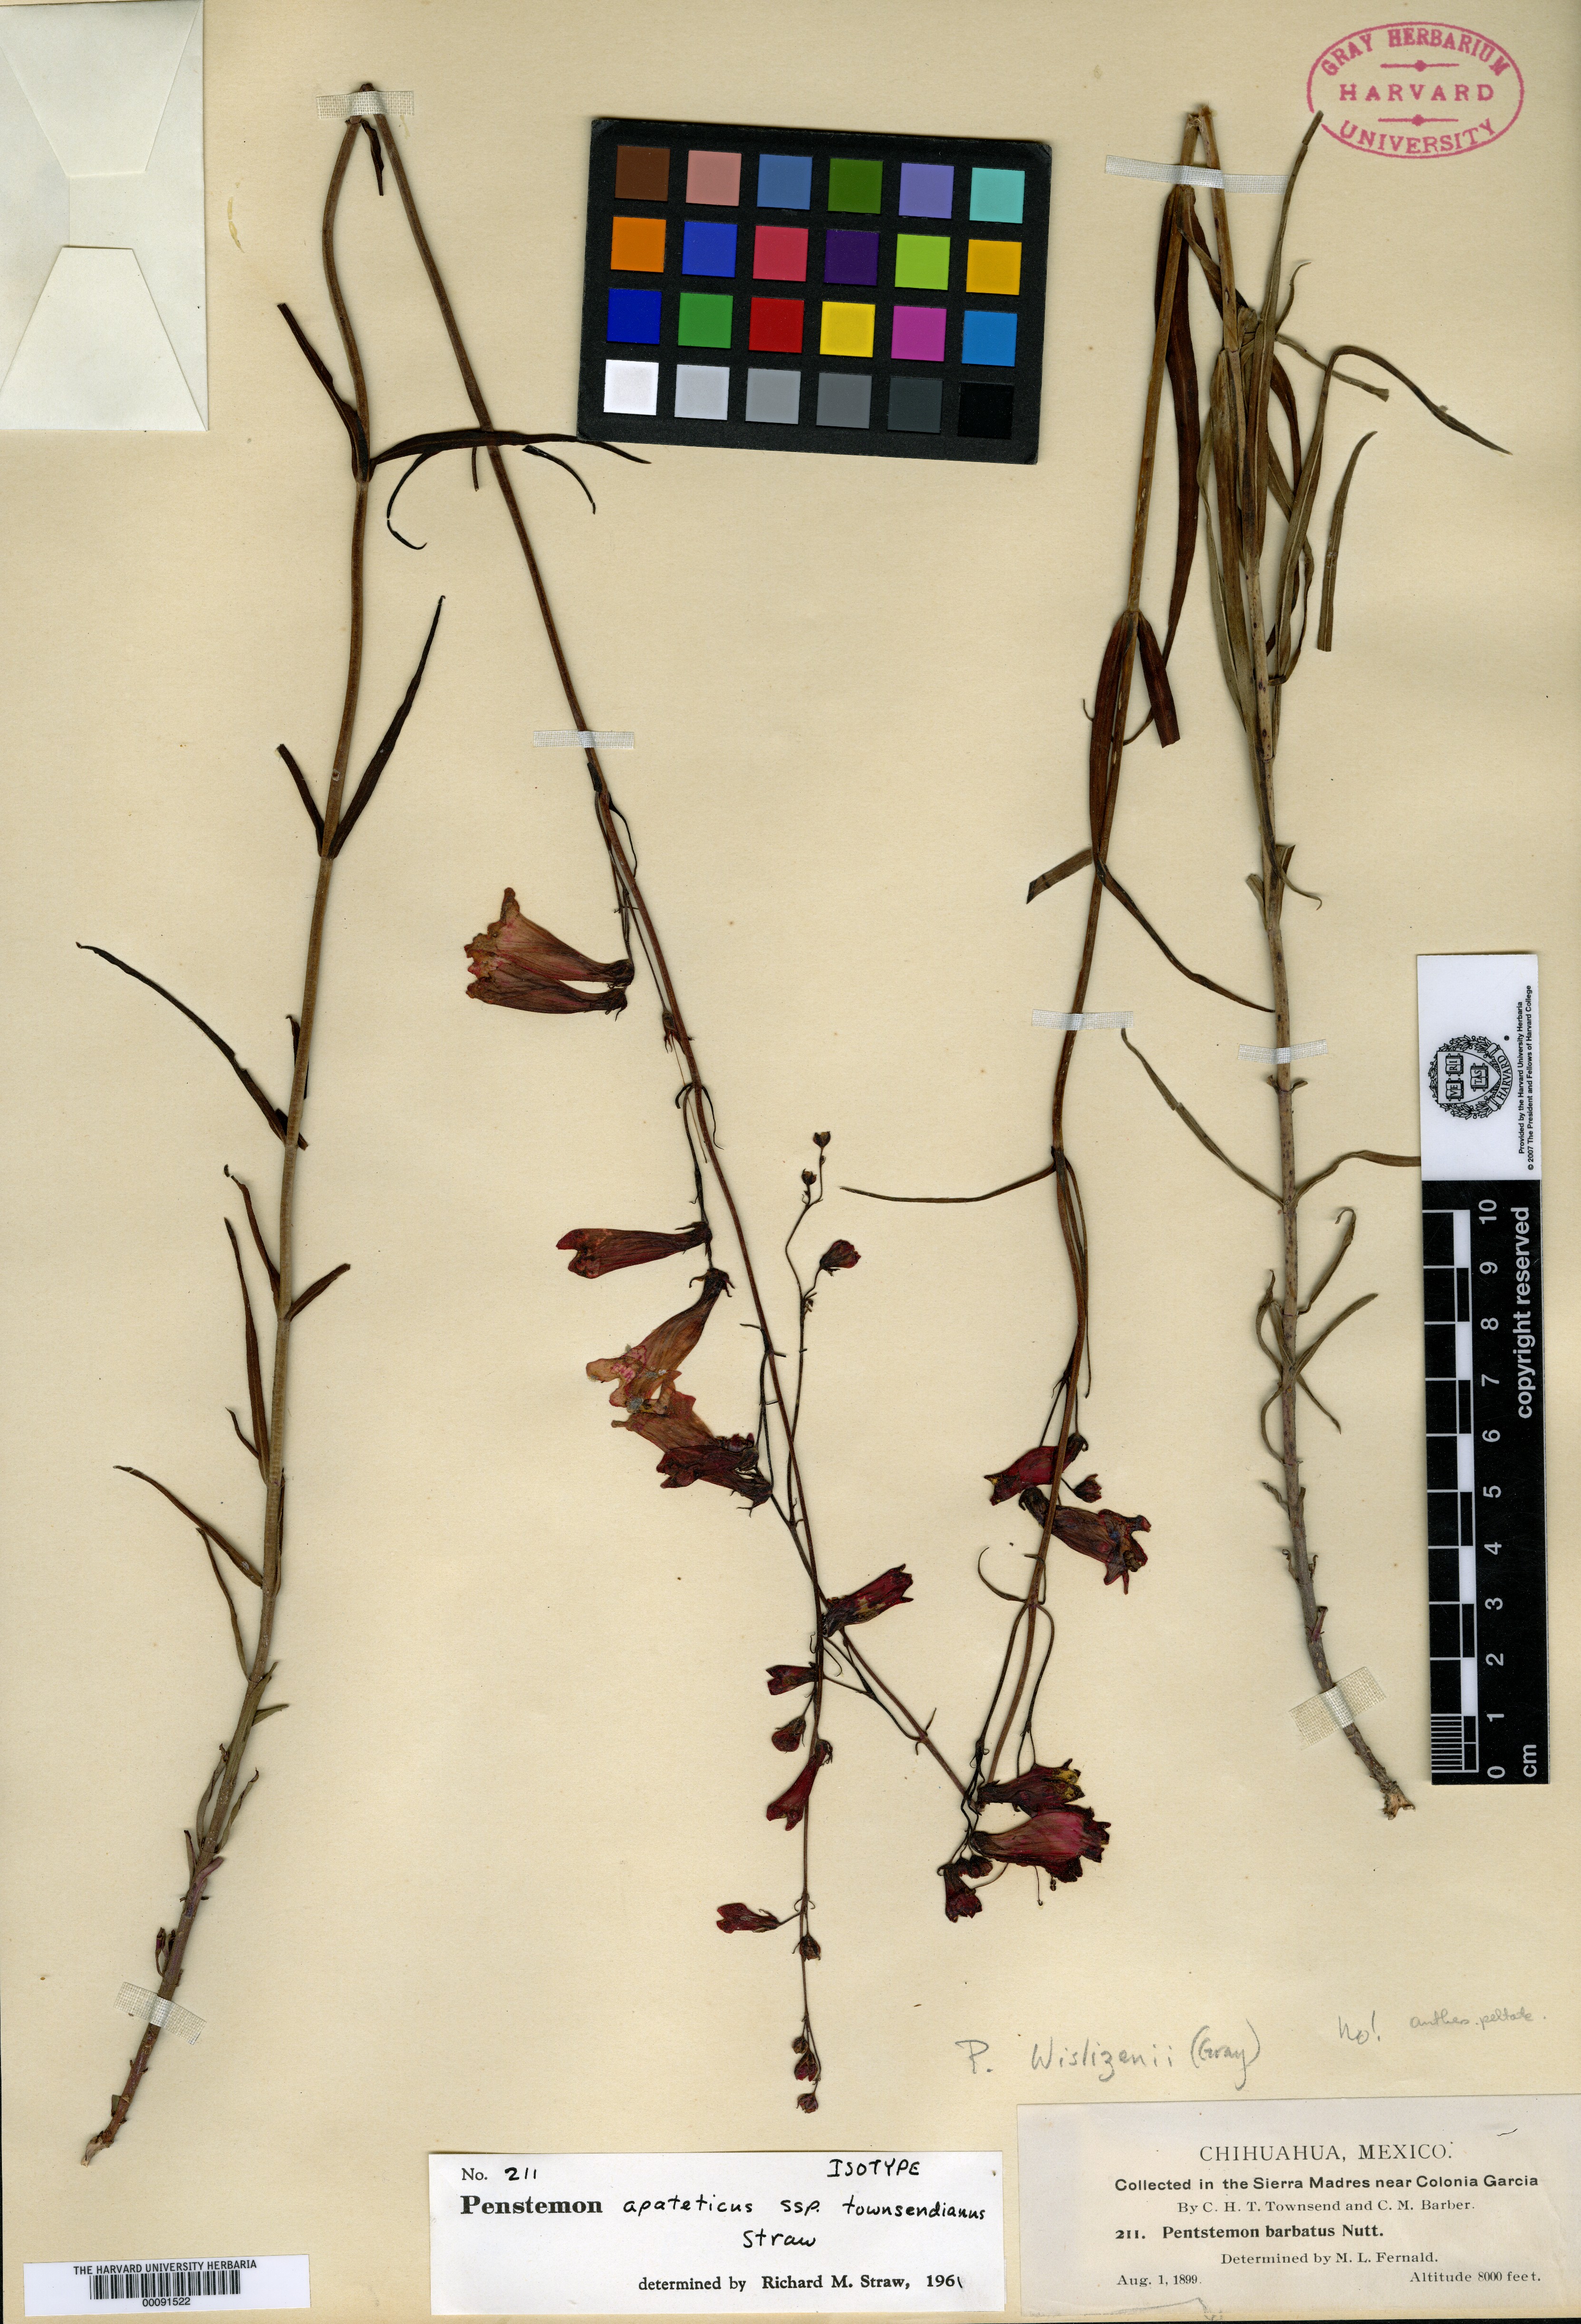 Penstemon apateticus subsp. townsendianus image